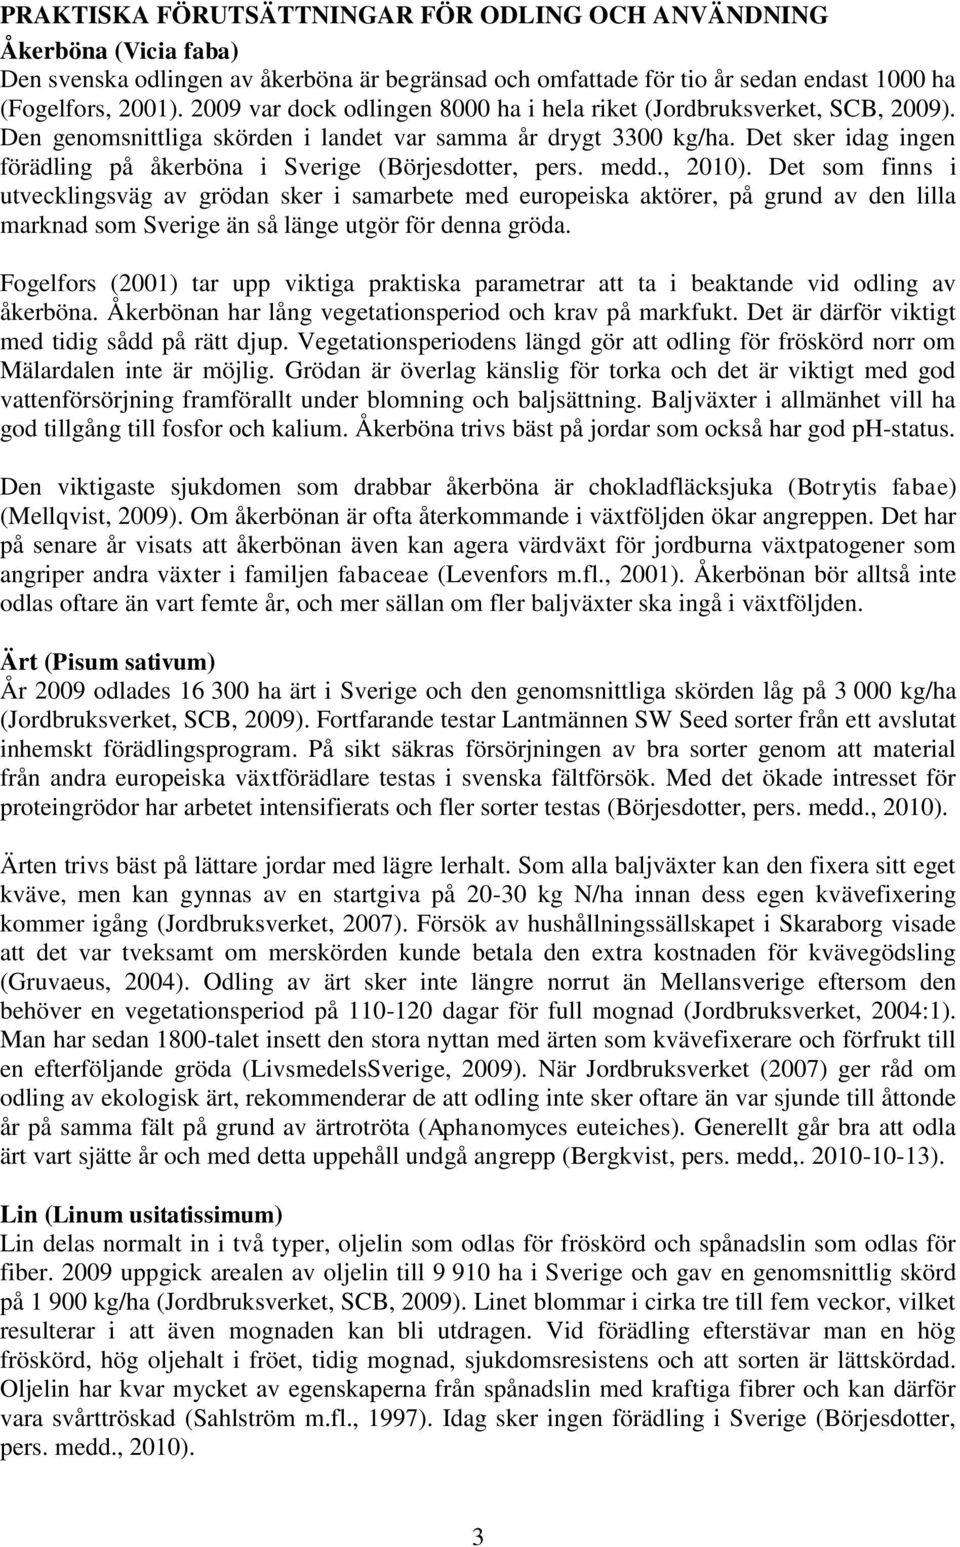 Det sker idag ingen förädling på åkerböna i Sverige (Börjesdotter, pers. medd., 2010).